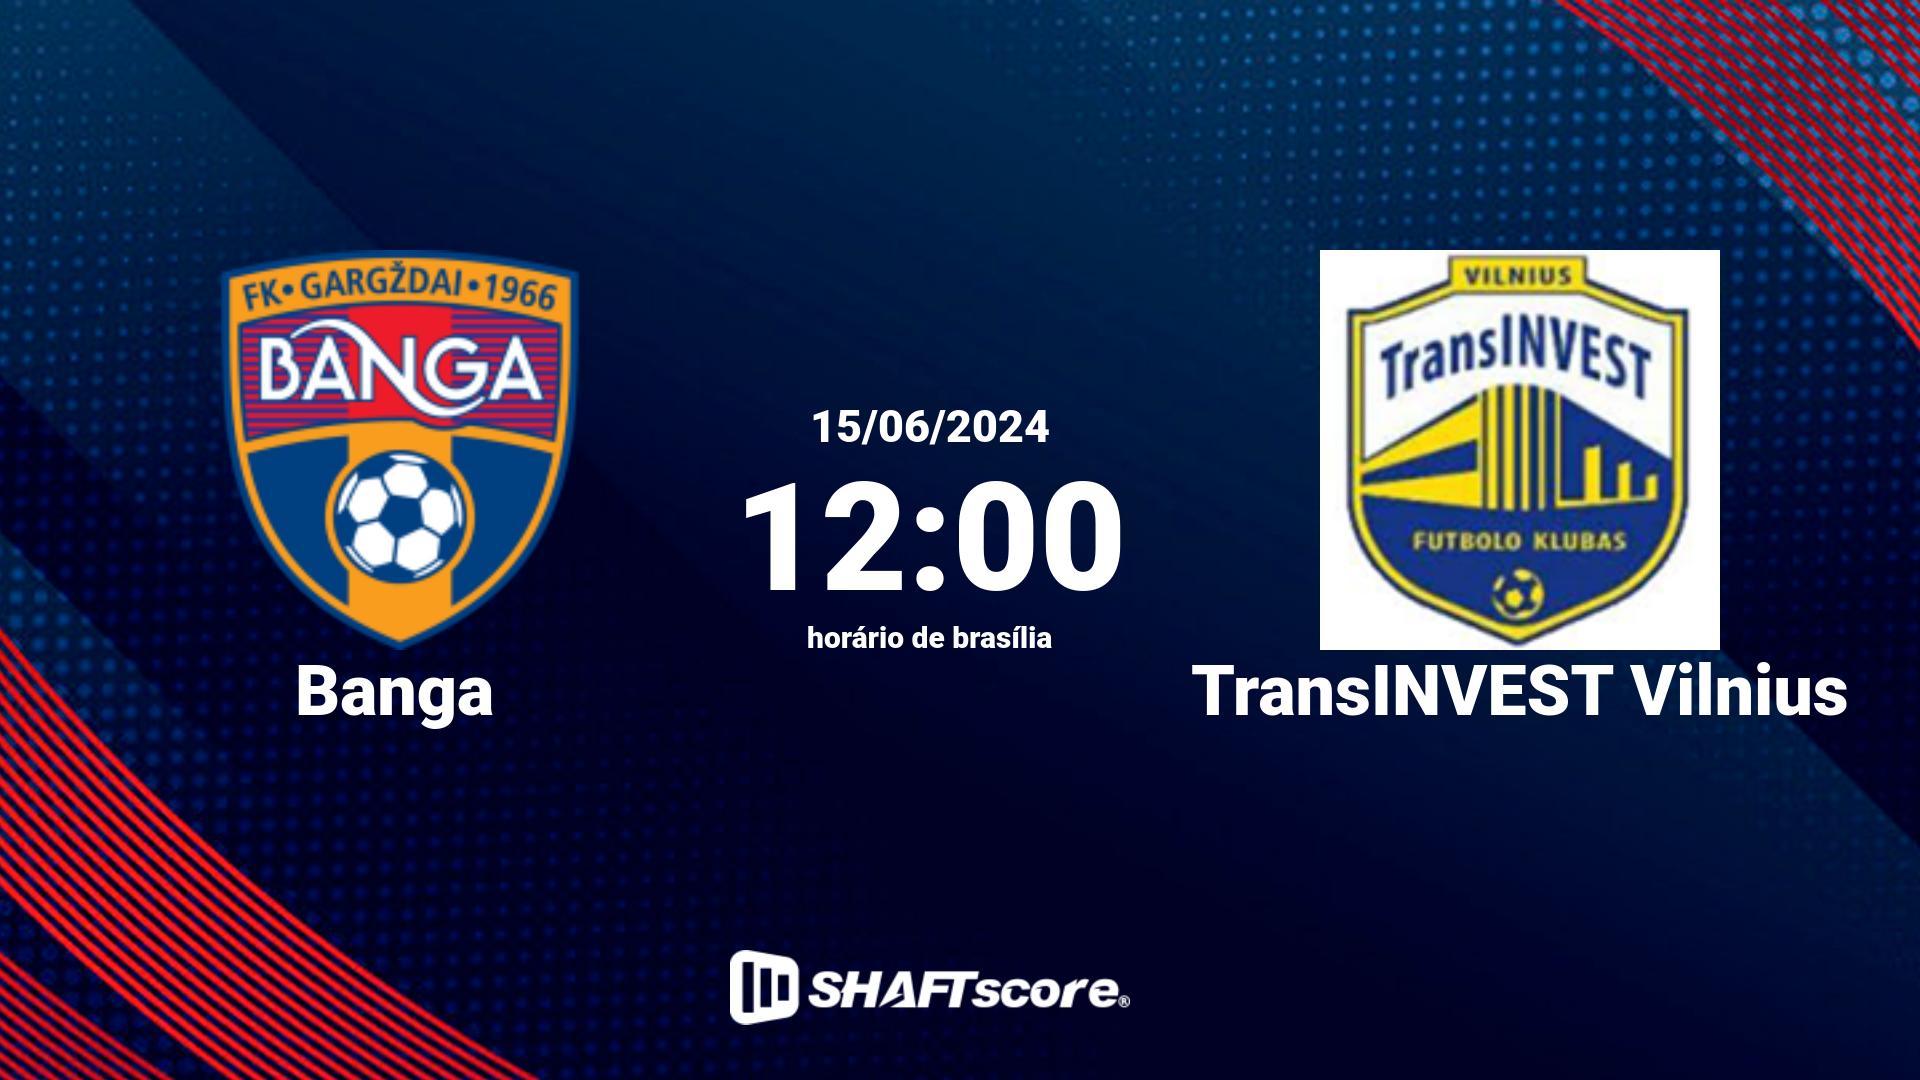 Estatísticas do jogo Banga vs TransINVEST Vilnius 15.06 12:00